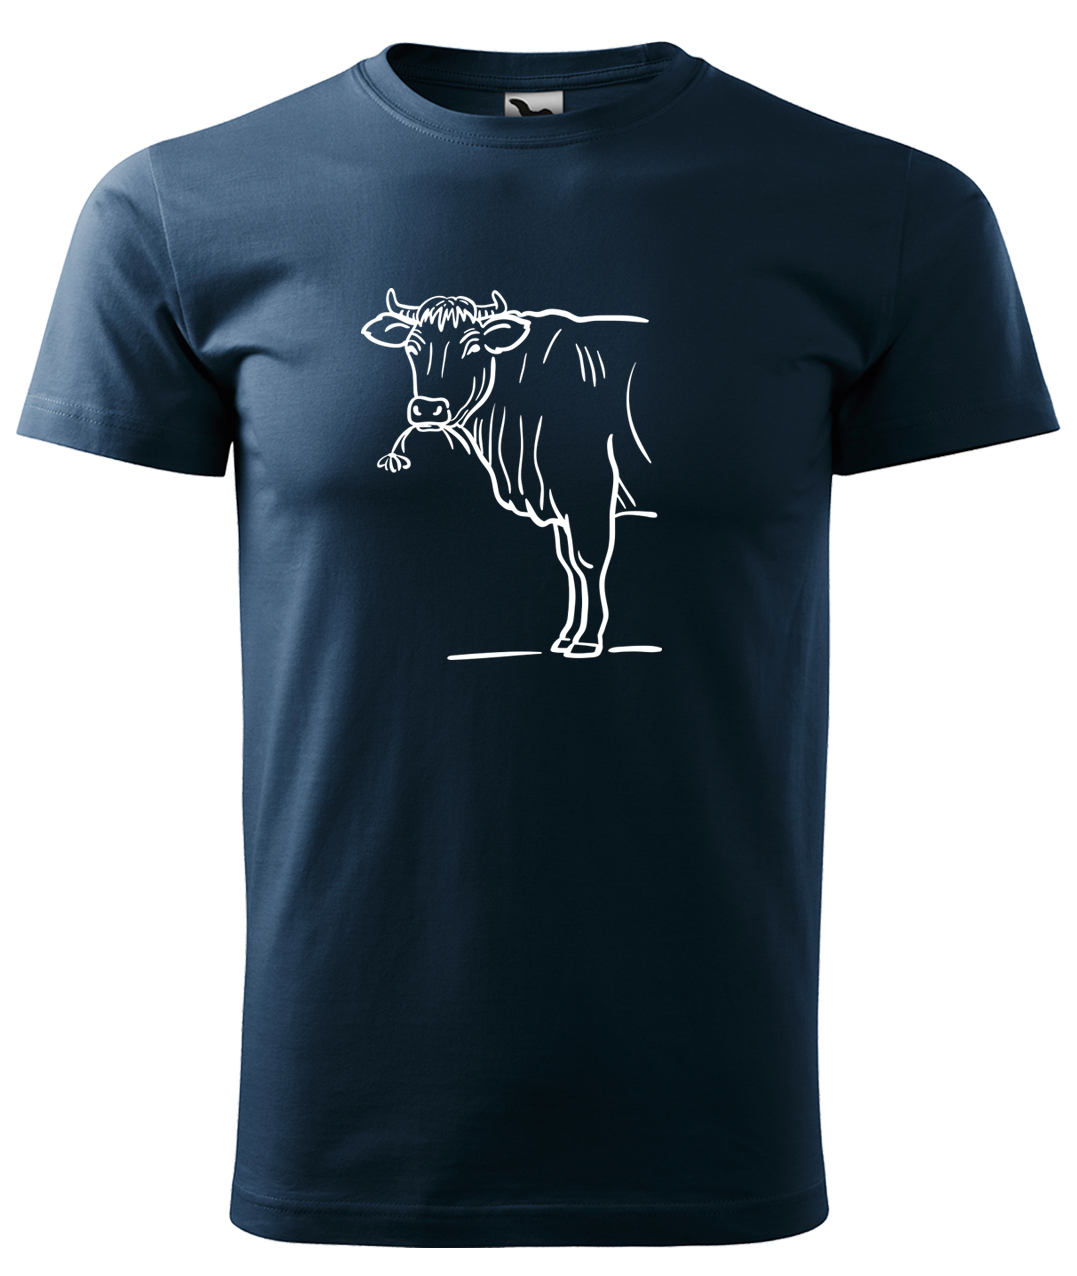 Dětské tričko s krávou - Býk Velikost: 8 let / 134 cm, Barva: Námořní modrá (02), Délka rukávu: Krátký rukáv